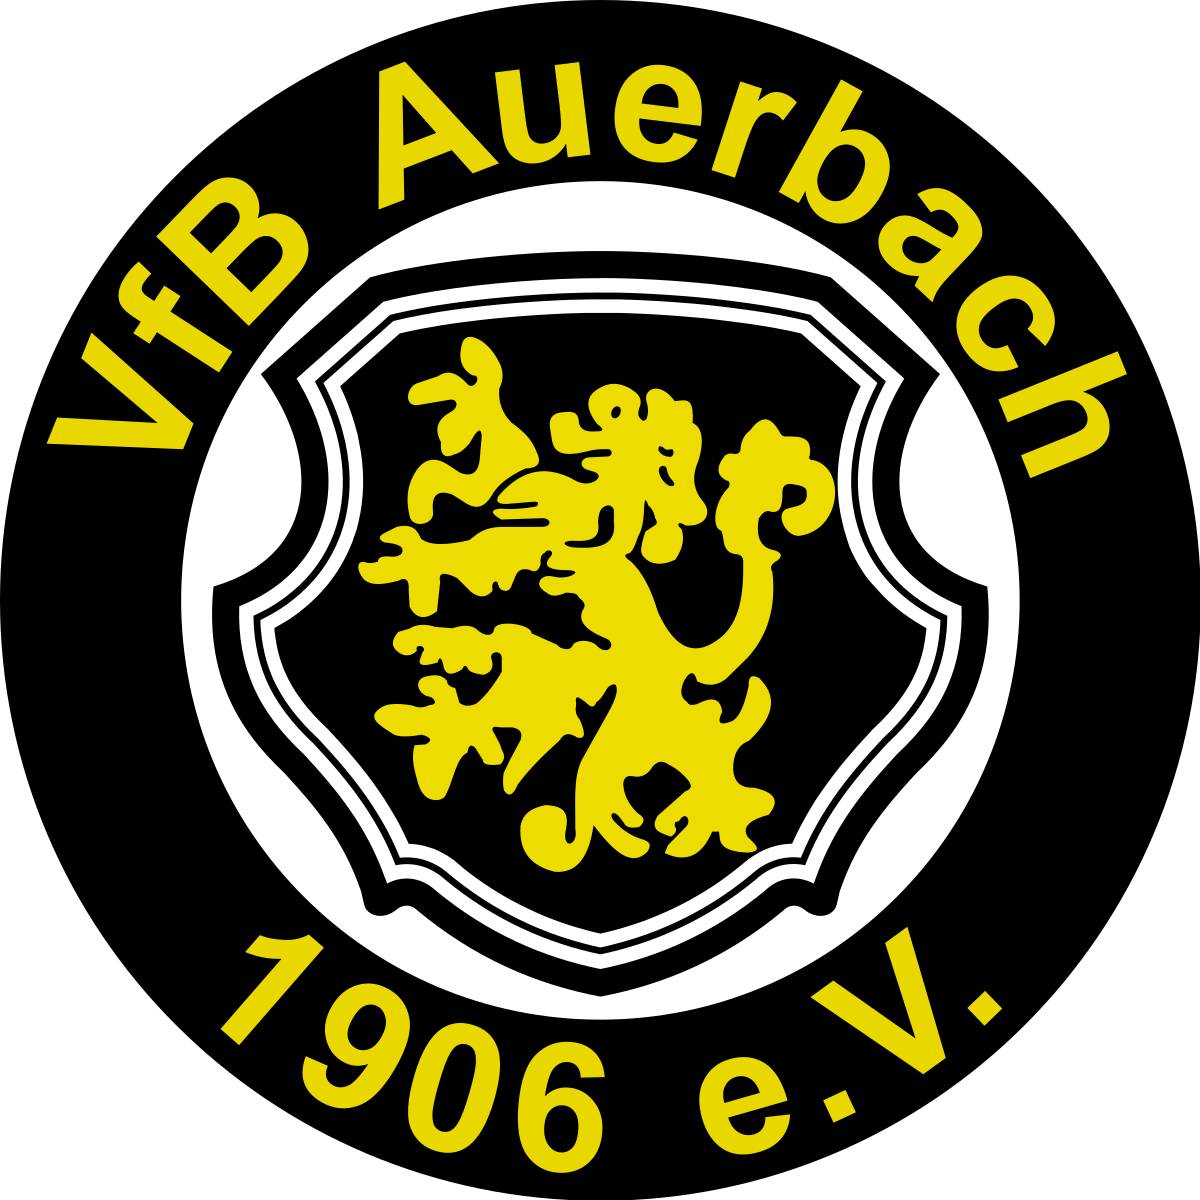 » Unser Gast: VfB Auerbach 1906 e.V. «